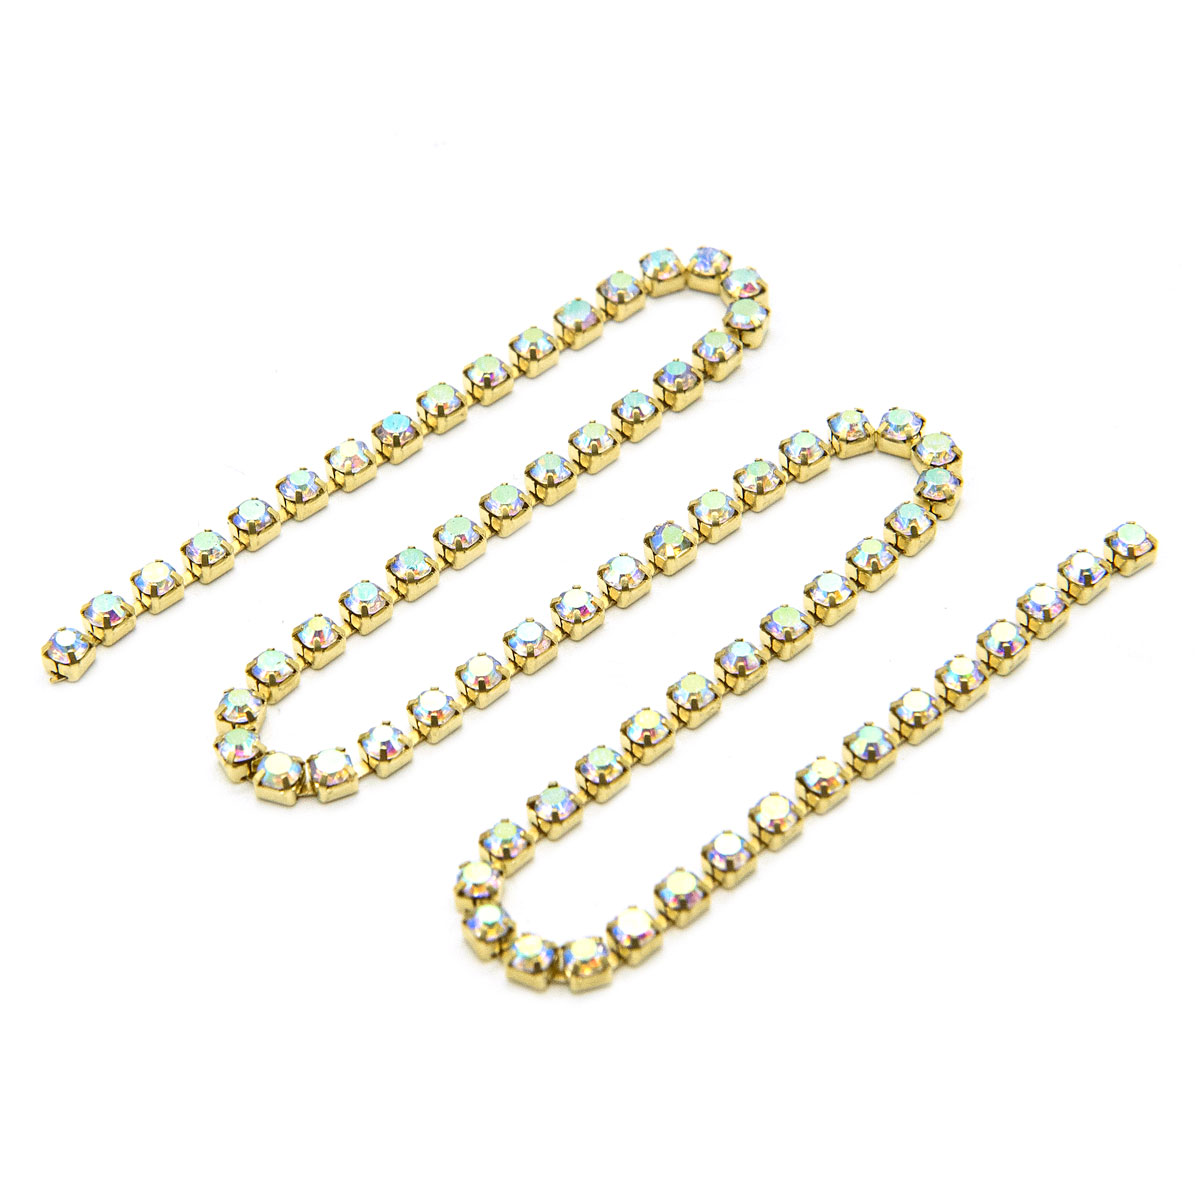 ЦС002ЗЦ3 Стразовые цепочки (золото), цвет: белый с AB покрытием, размер 3 мм, 30 см.